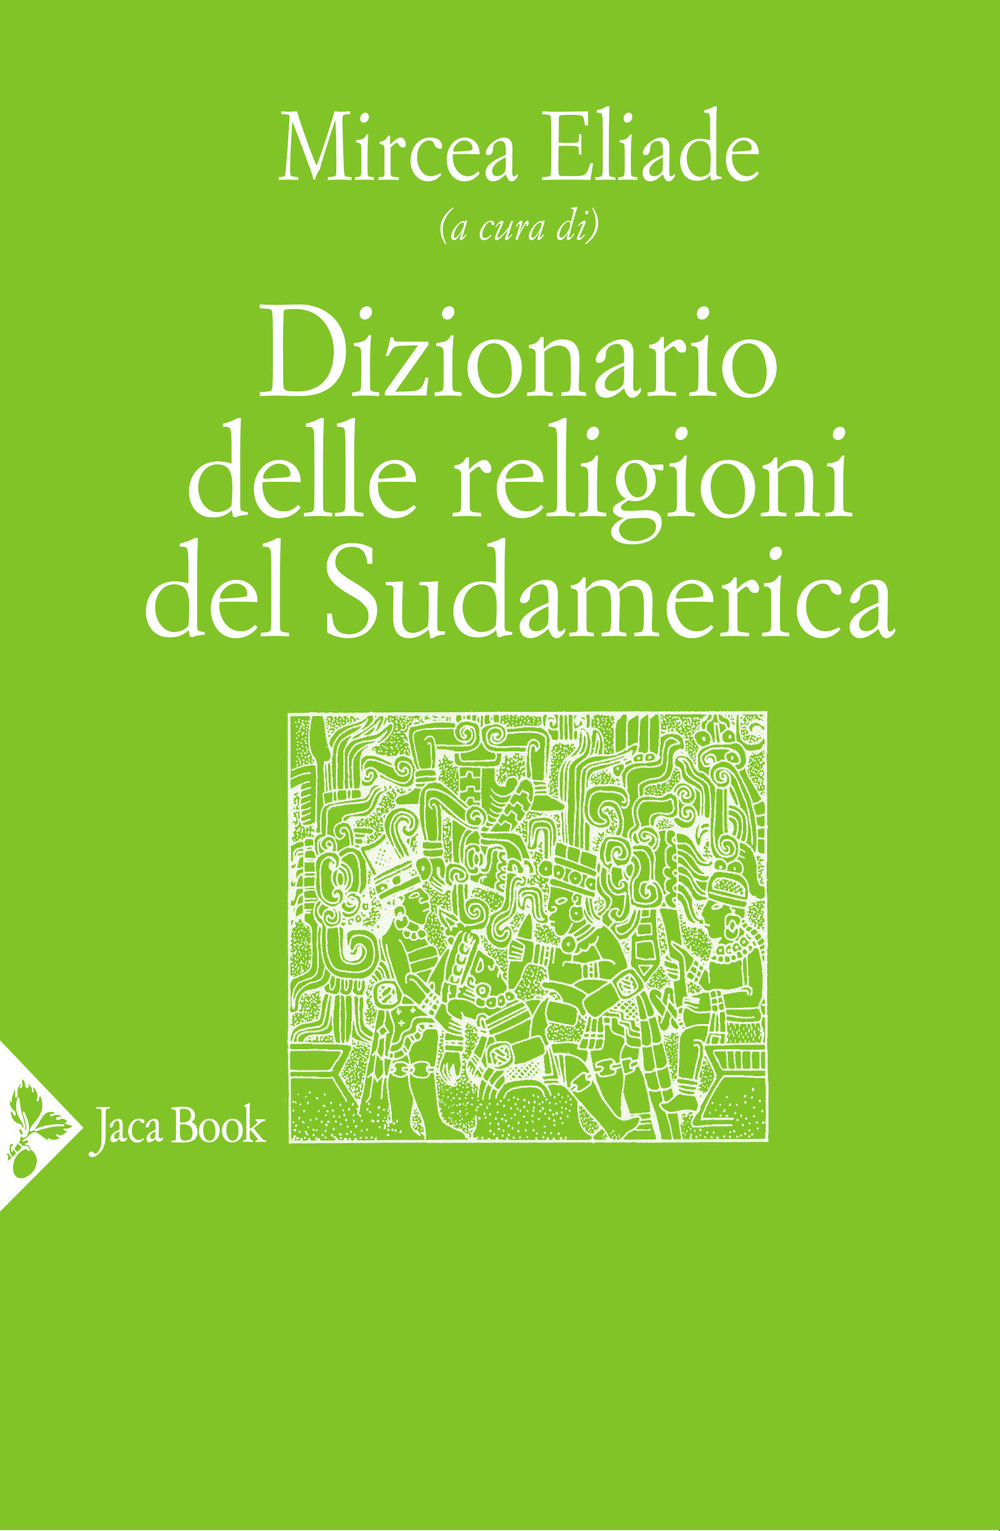 Image of Dizionario delle religioni del Sudamerica